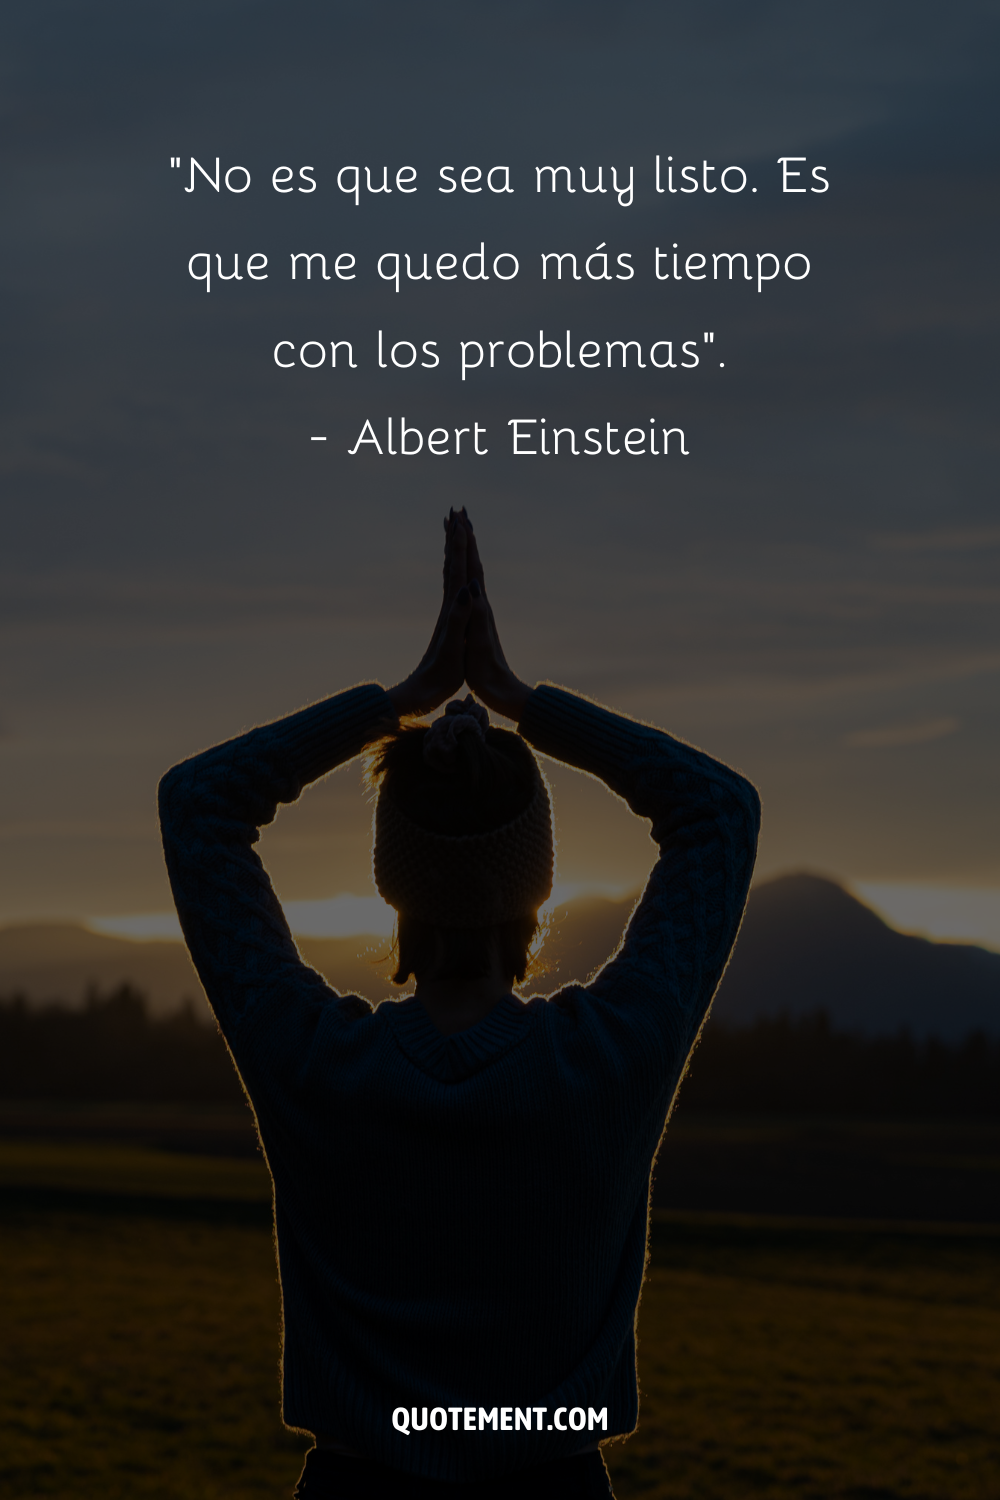 "No es que sea muy listo. Es sólo que me quedo más tiempo con los problemas". - Albert Einstein